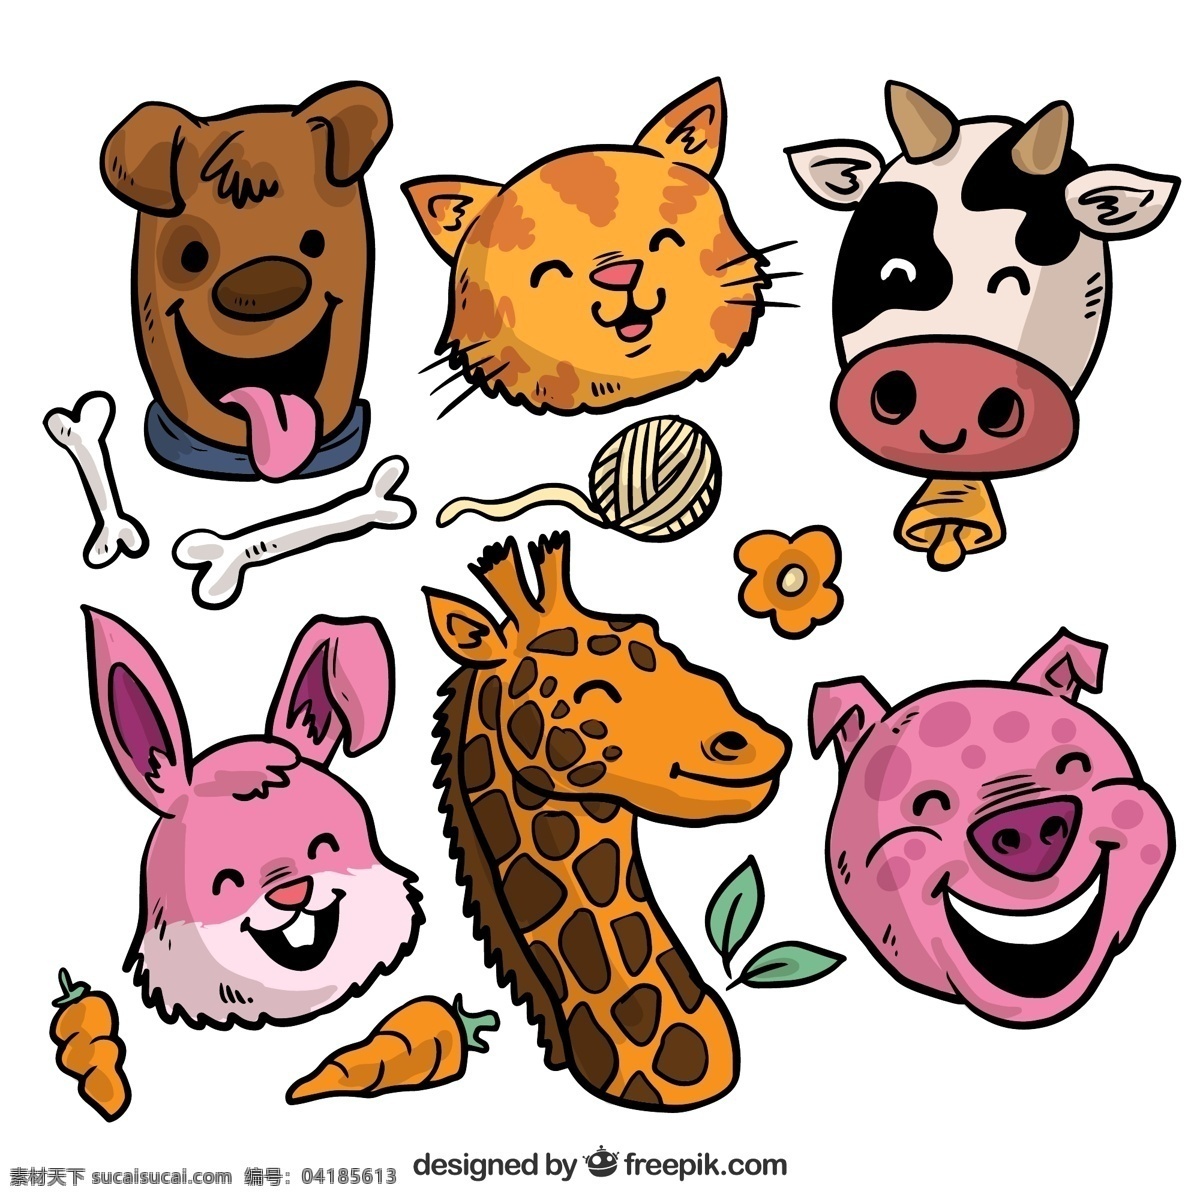 款 彩绘 笑脸 动物 头像 树叶 胡萝卜 兔子 花 长颈鹿 狗 奶牛 猫 猪 线团 骨头 文化艺术 绘画书法